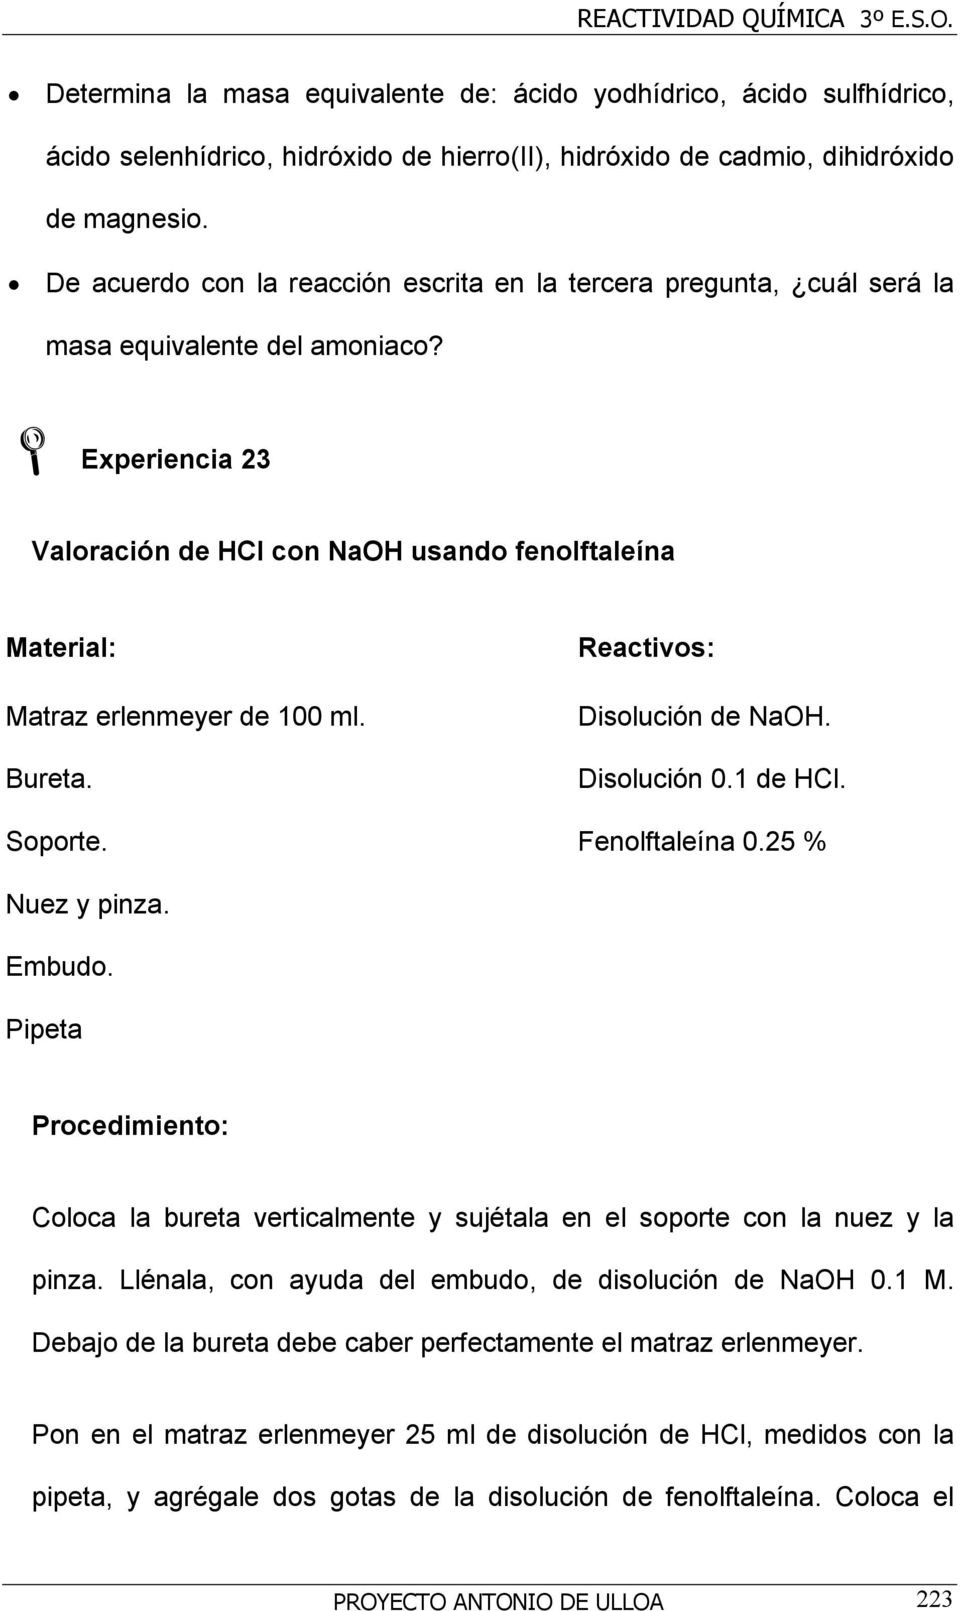 Experiencia 23 Valoración de HCl con NaOH usando fenolftaleína Material: Matraz erlenmeyer de 100 ml. Bureta. Soporte. Reactivos: Disolución de NaOH. Disolución 0.1 de HCl. Fenolftaleína 0.